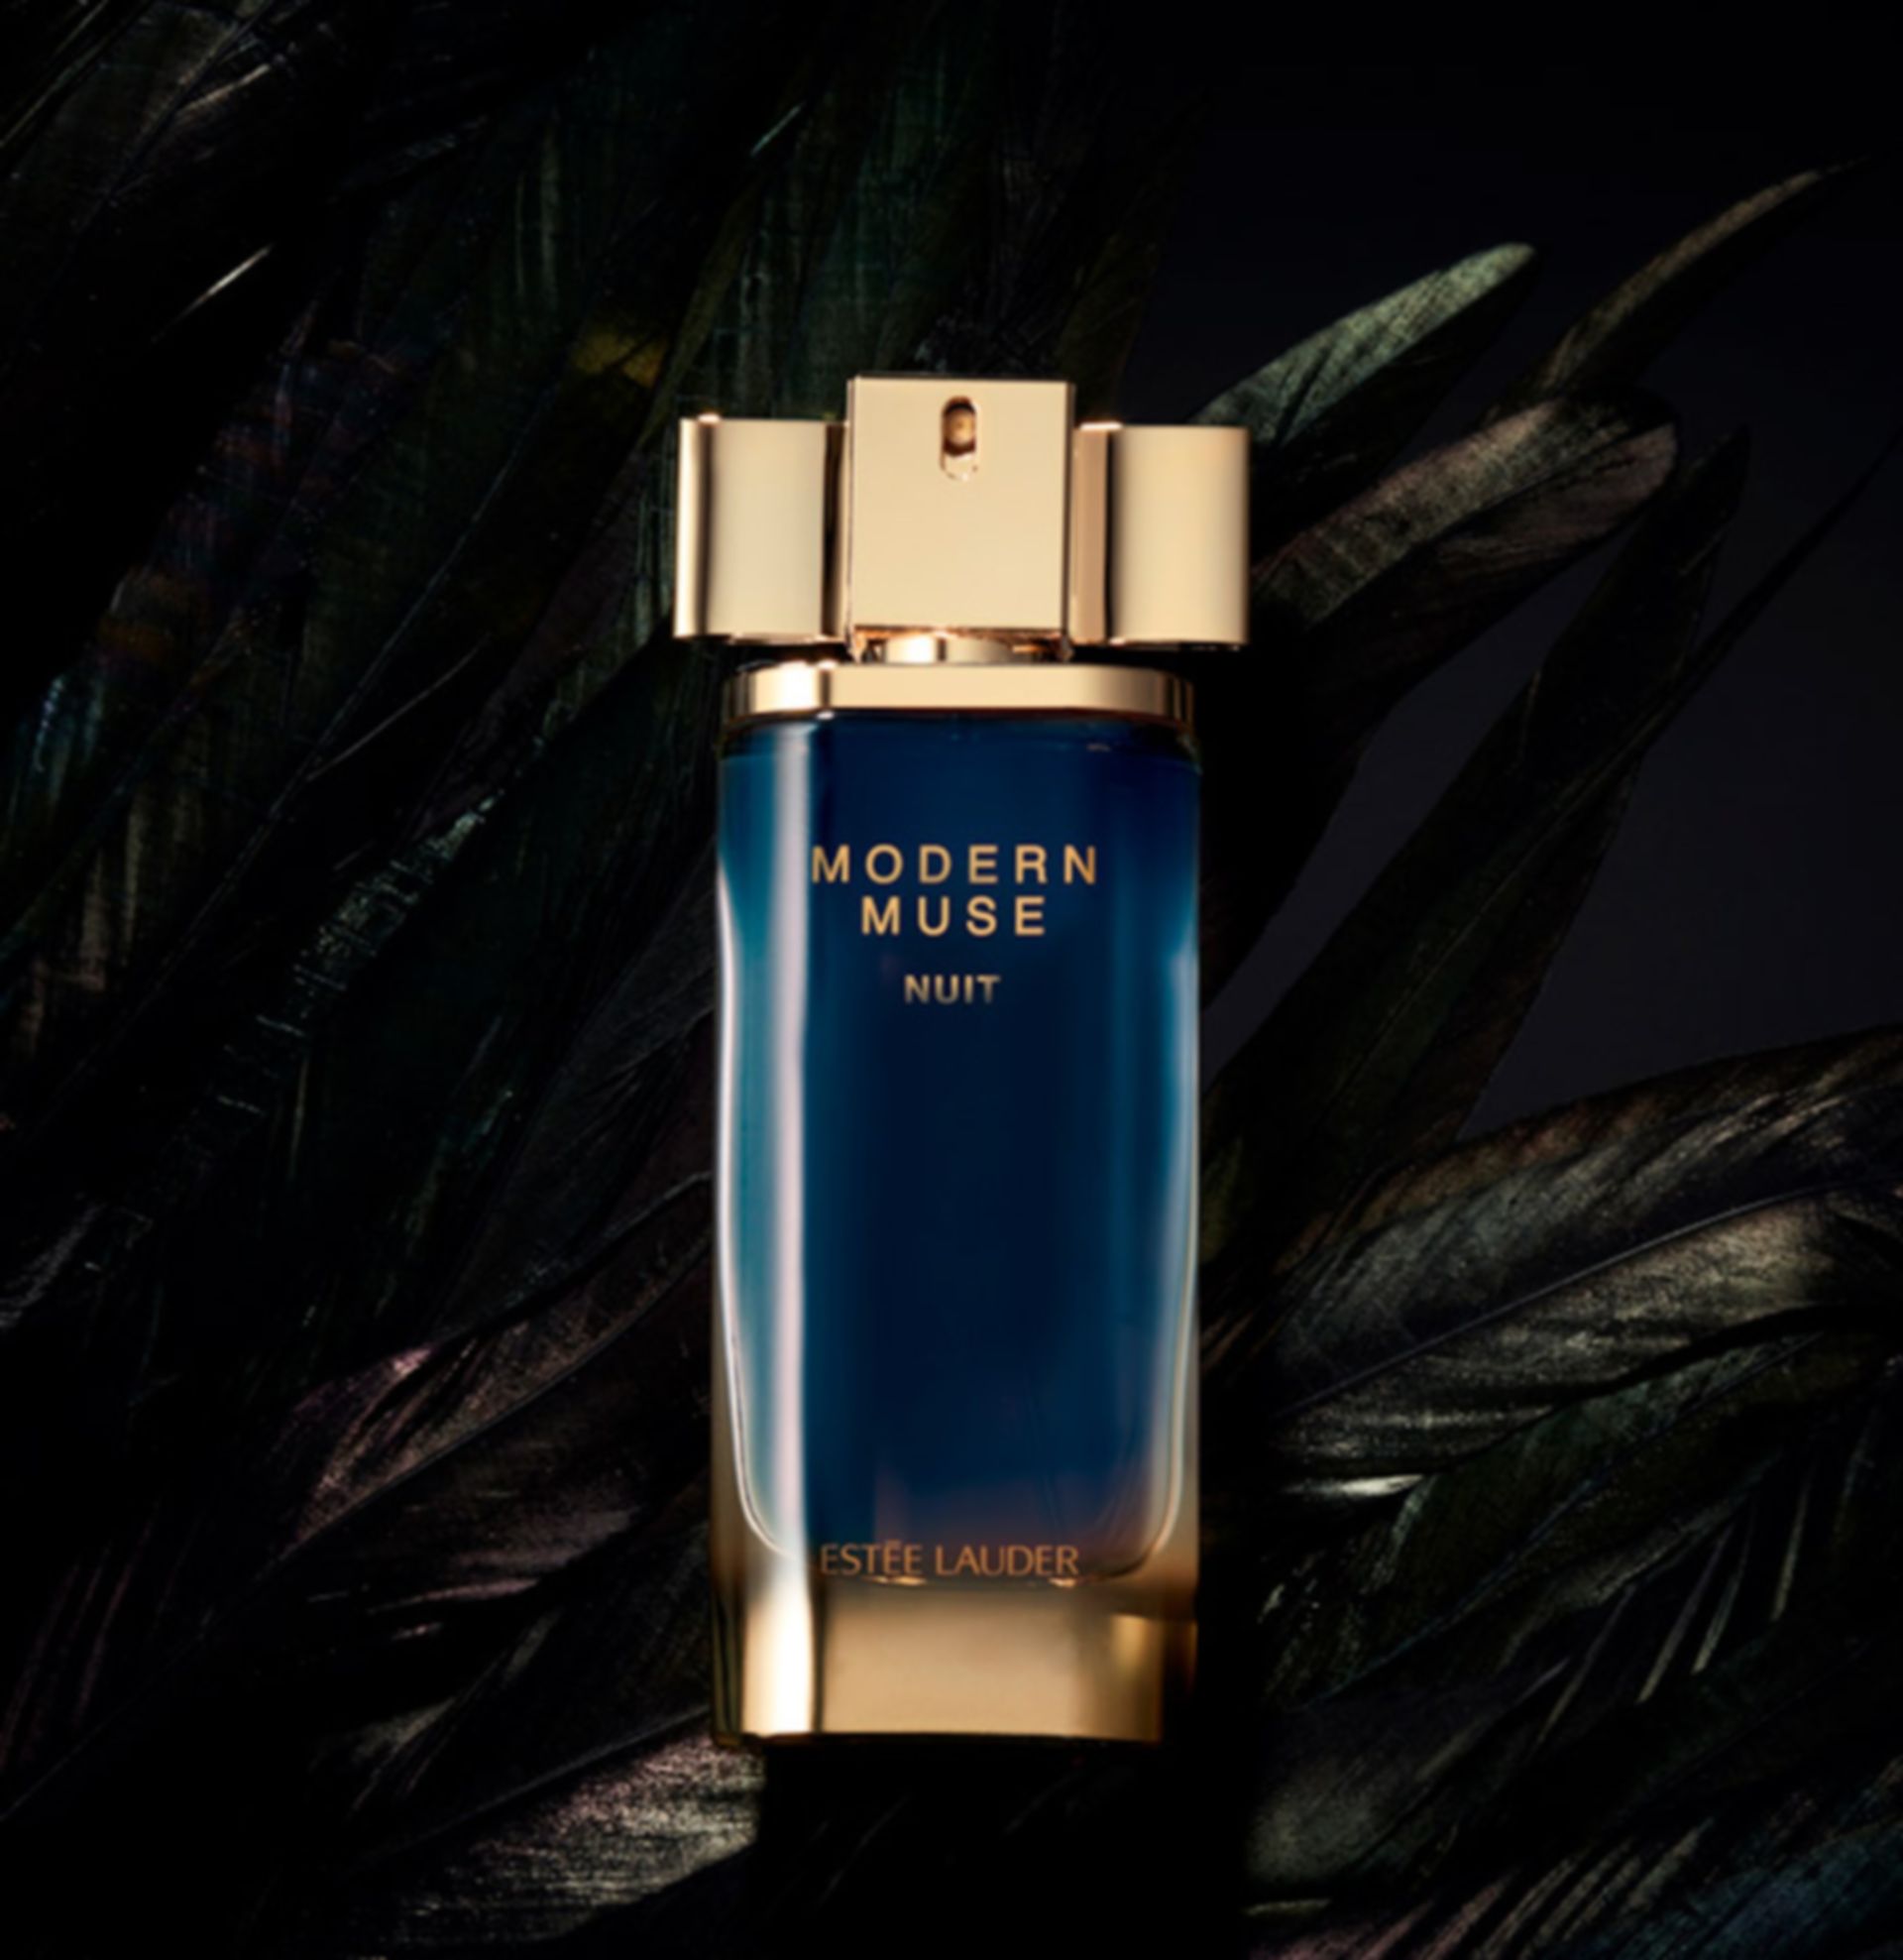 Estee Lauder Modern Muse Nuit Eau de parfum